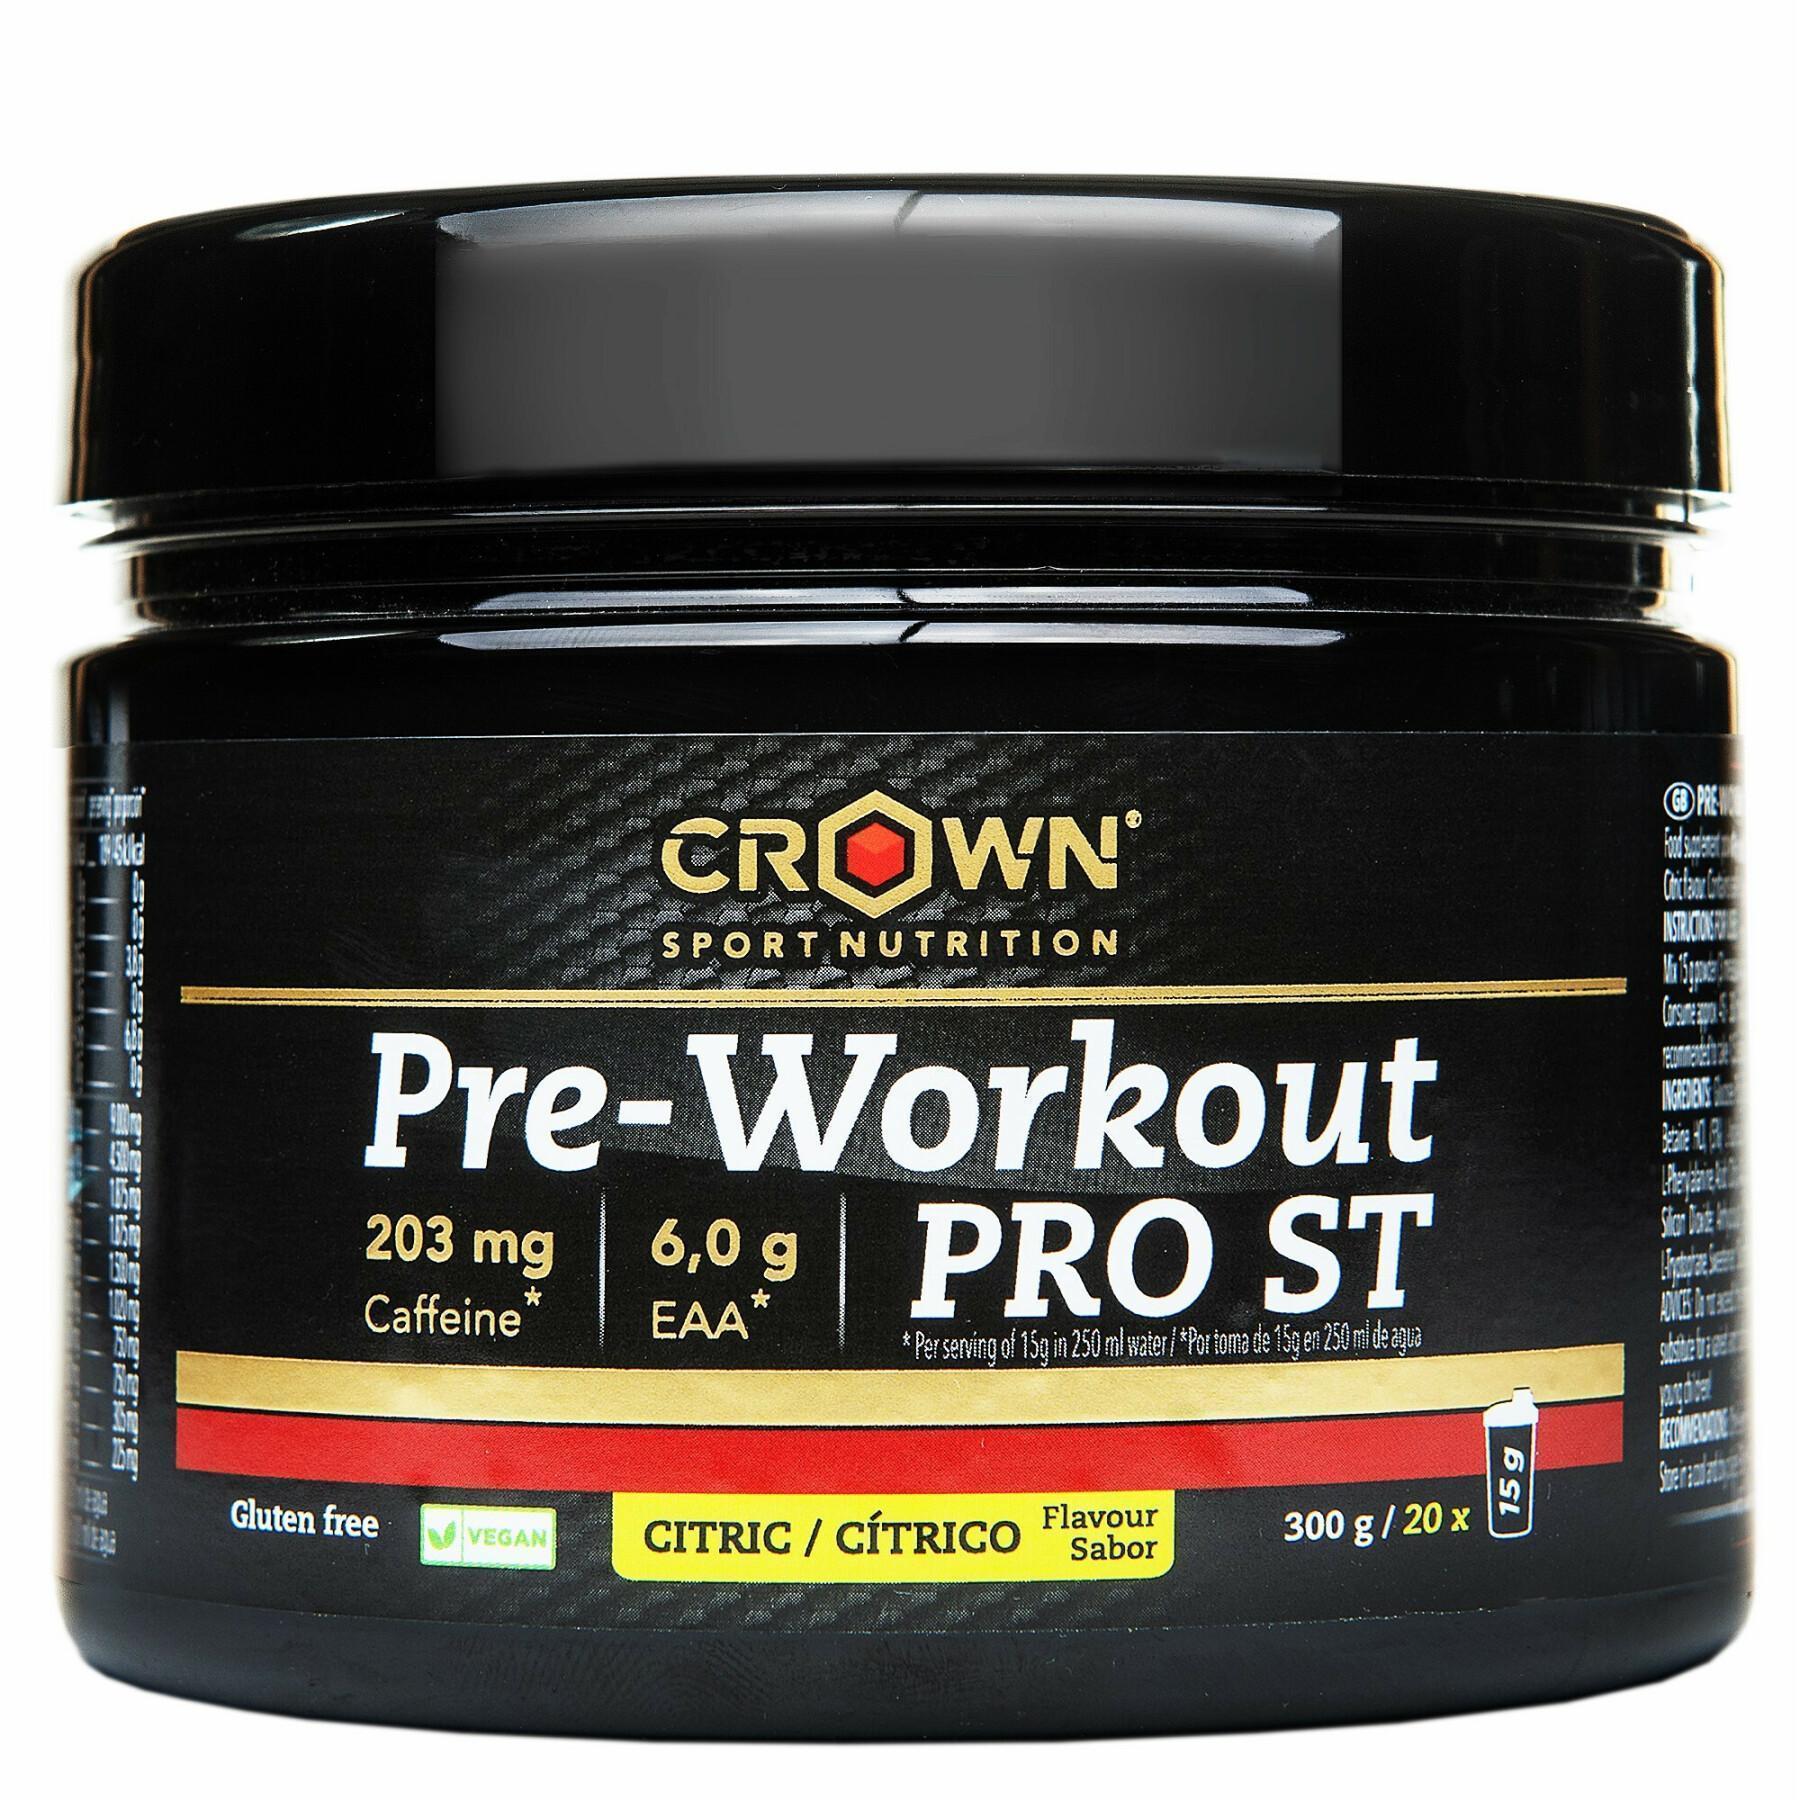 Boisson énergétique Crown Sport Nutrition Pre-Workout Pro St - citrique - 300 g